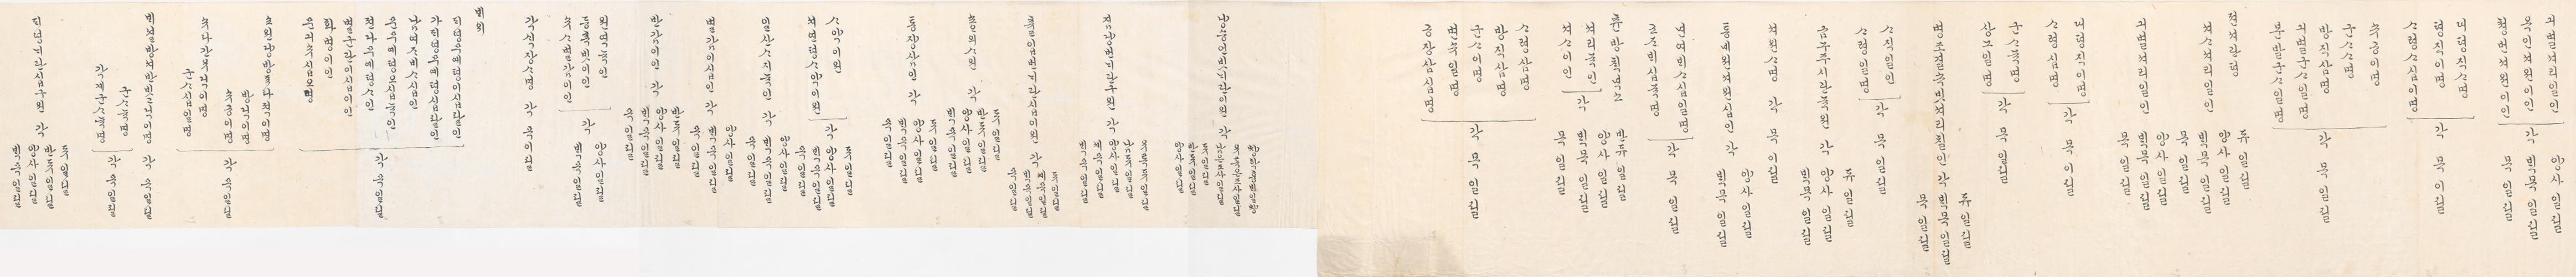 2_1891년 12월 왕세자 맹자 필강 기념 내외상격 발기 2.jpg